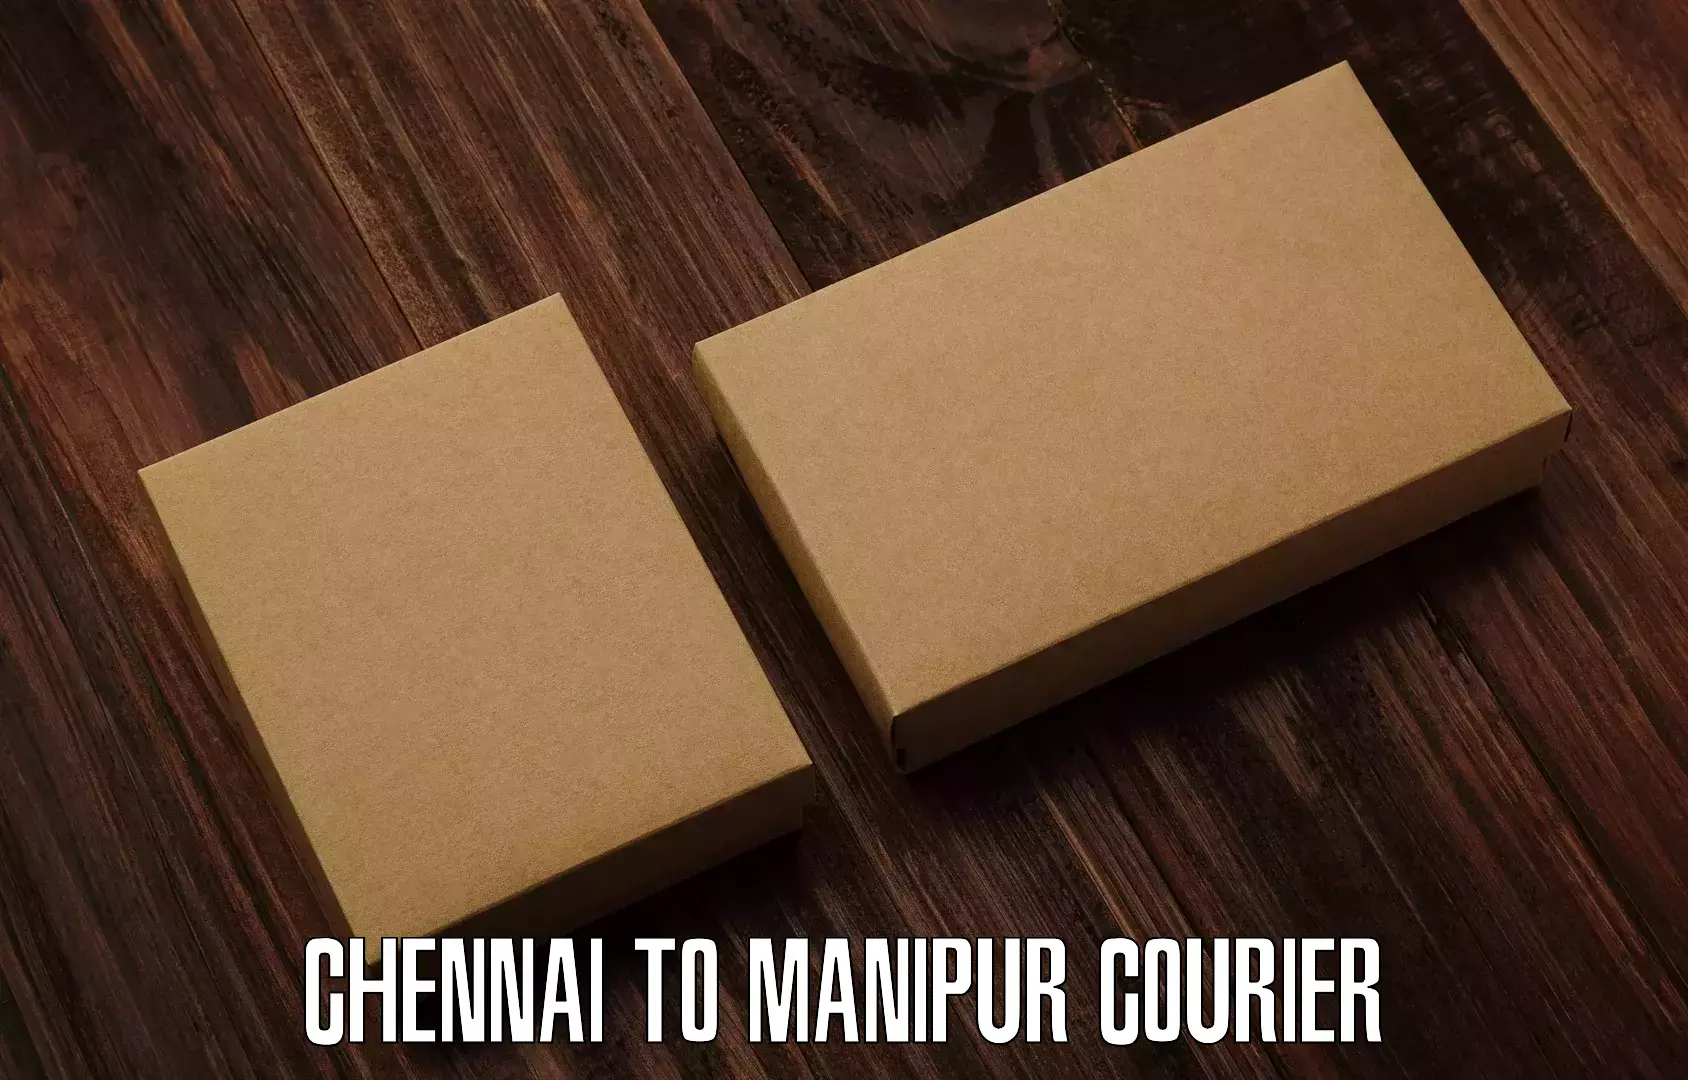 Easy access courier services Chennai to Churachandpur